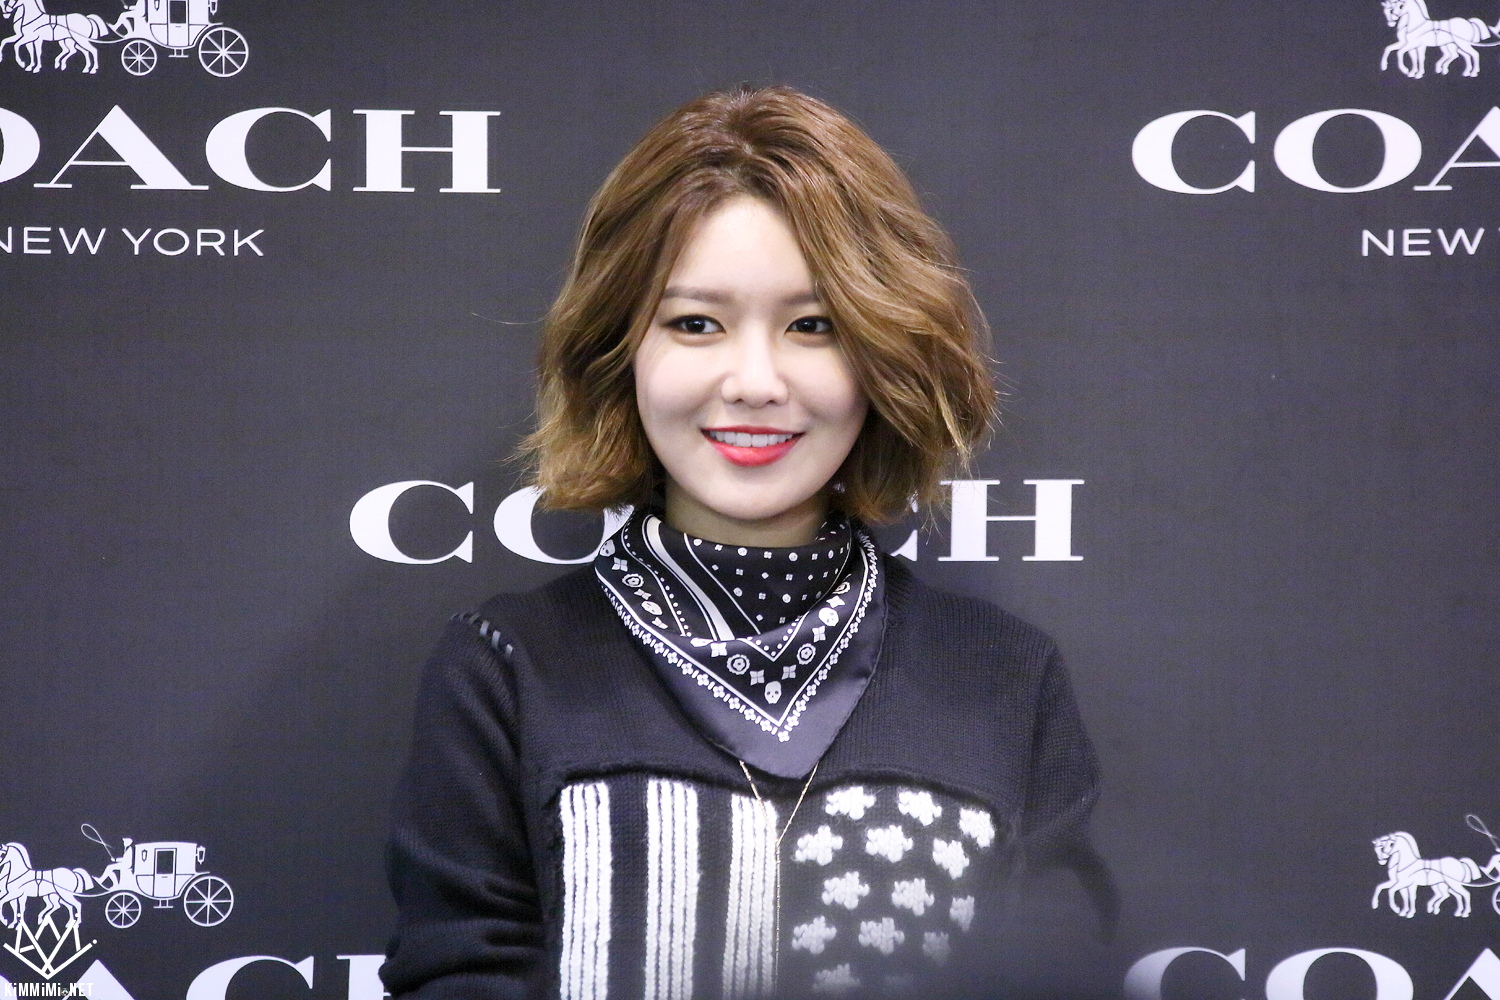  [PIC][27-11-2015]SooYoung tham dự buổi Fansign cho thương hiệu "COACH" tại Lotte Department Store Busan vào trưa nay - Page 2 2222564356BB25251AE17A